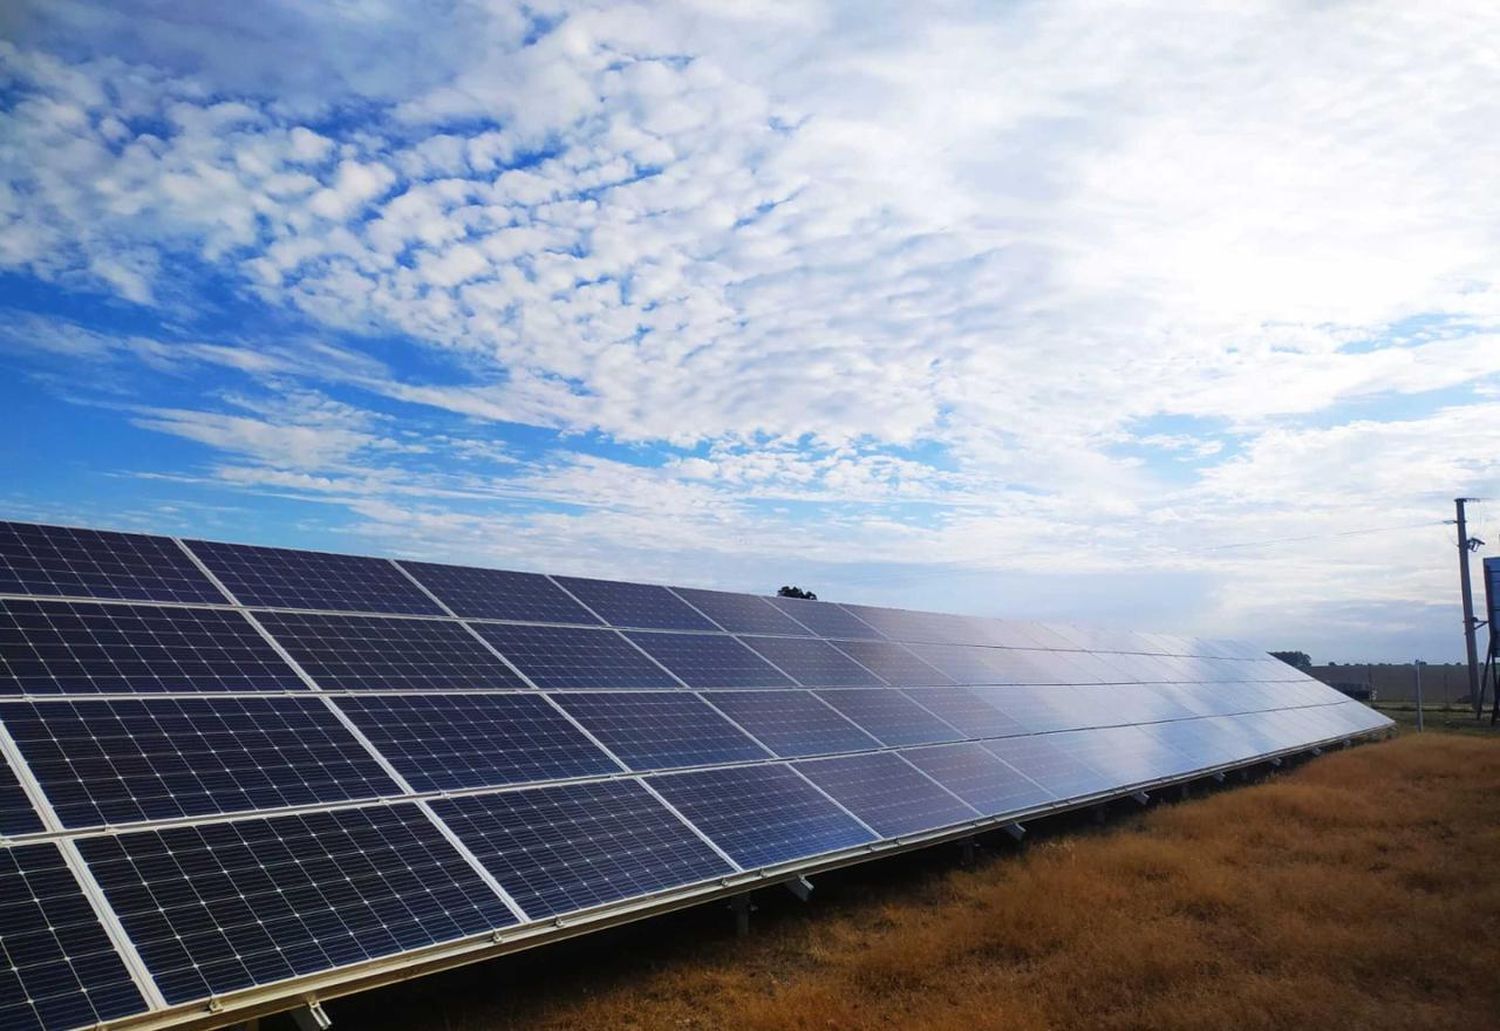 Venado Tuerto tendrá su imponente parque solar de 12 hectáreas